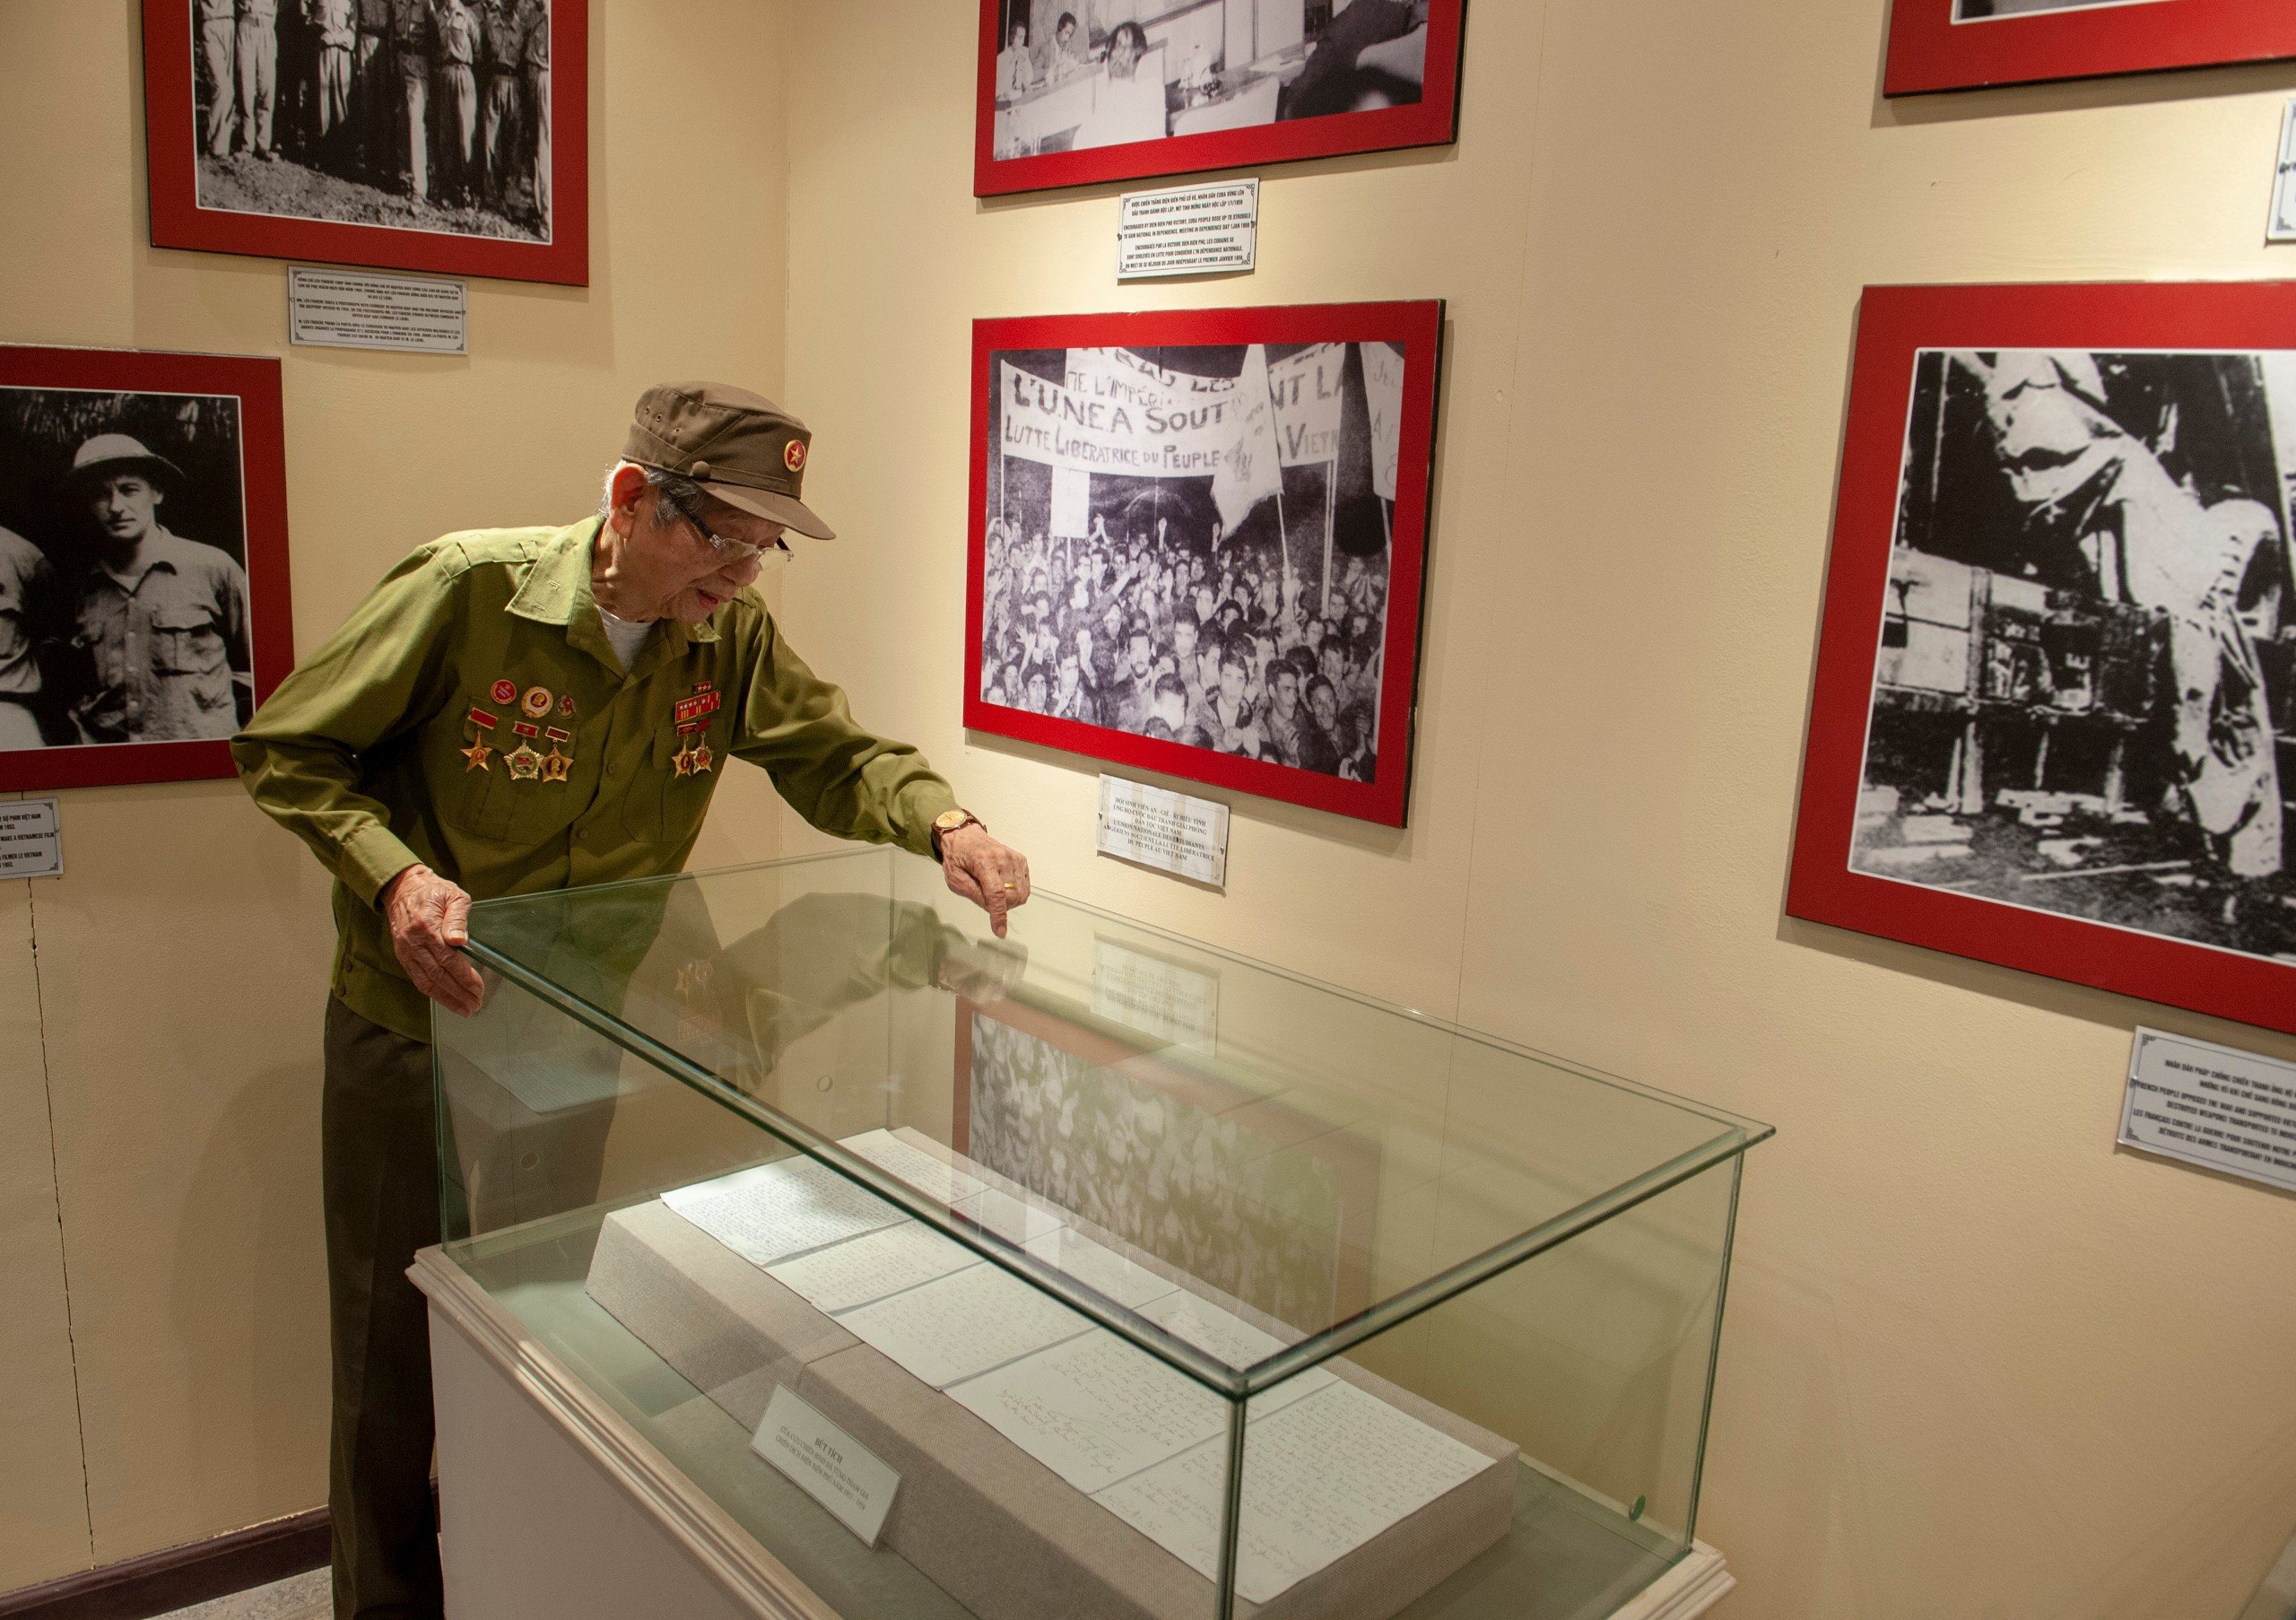 Ông Tăng xem tài liệu nói về ông trưng bày tại Bảo tàng Chiến thắng lịch sử Điện Biên Phủ. Ảnh: Ngọc Như Hải